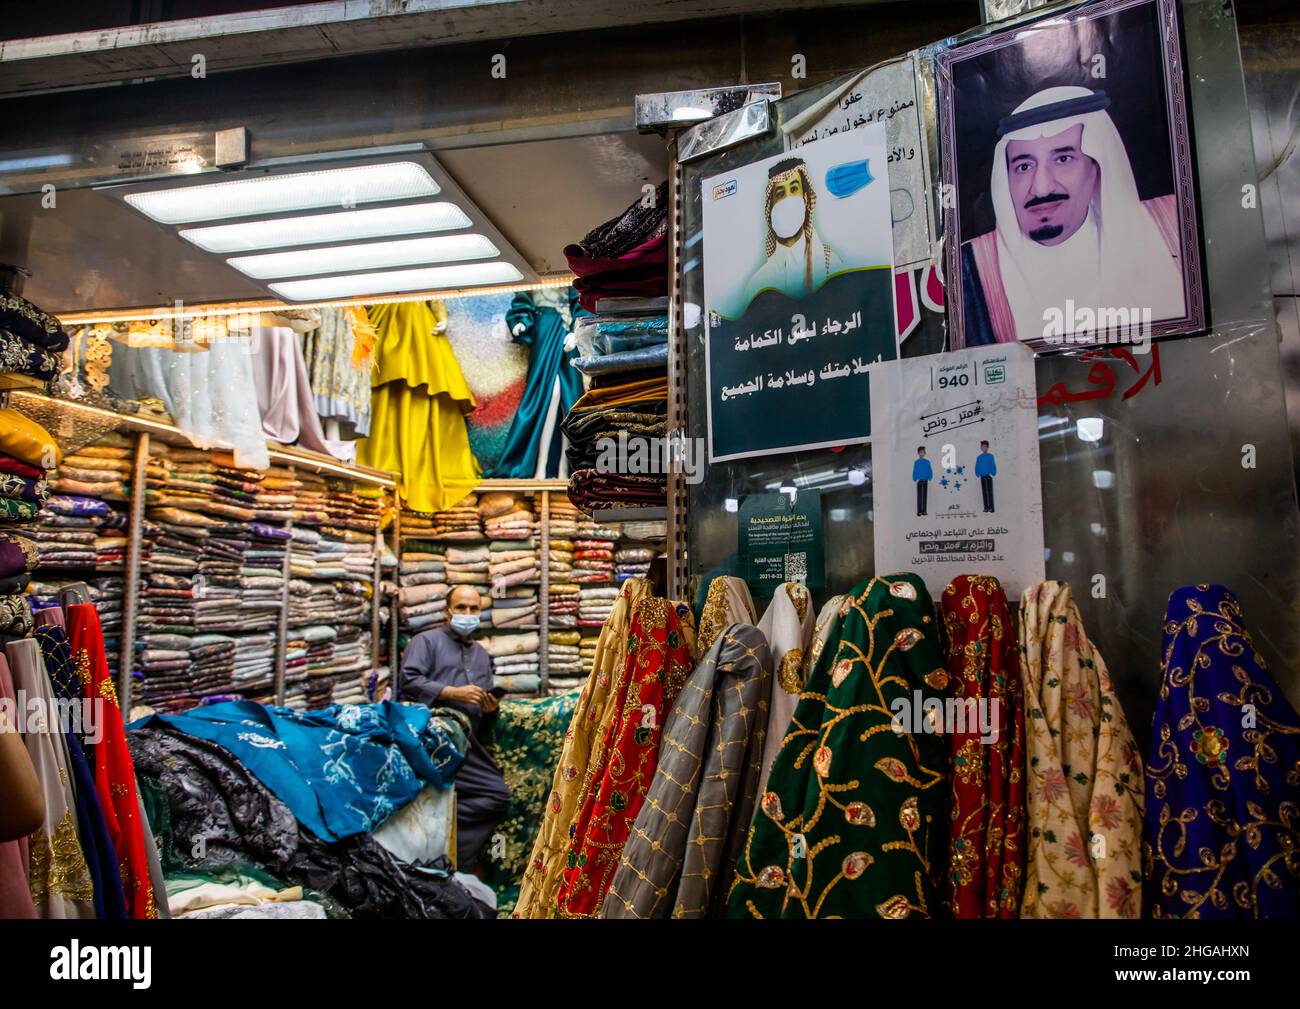 Signes de distanciation sociale devant les magasins pour éviter la contamination par les coviles, province de Jizan, Jizan, Arabie Saoudite Banque D'Images